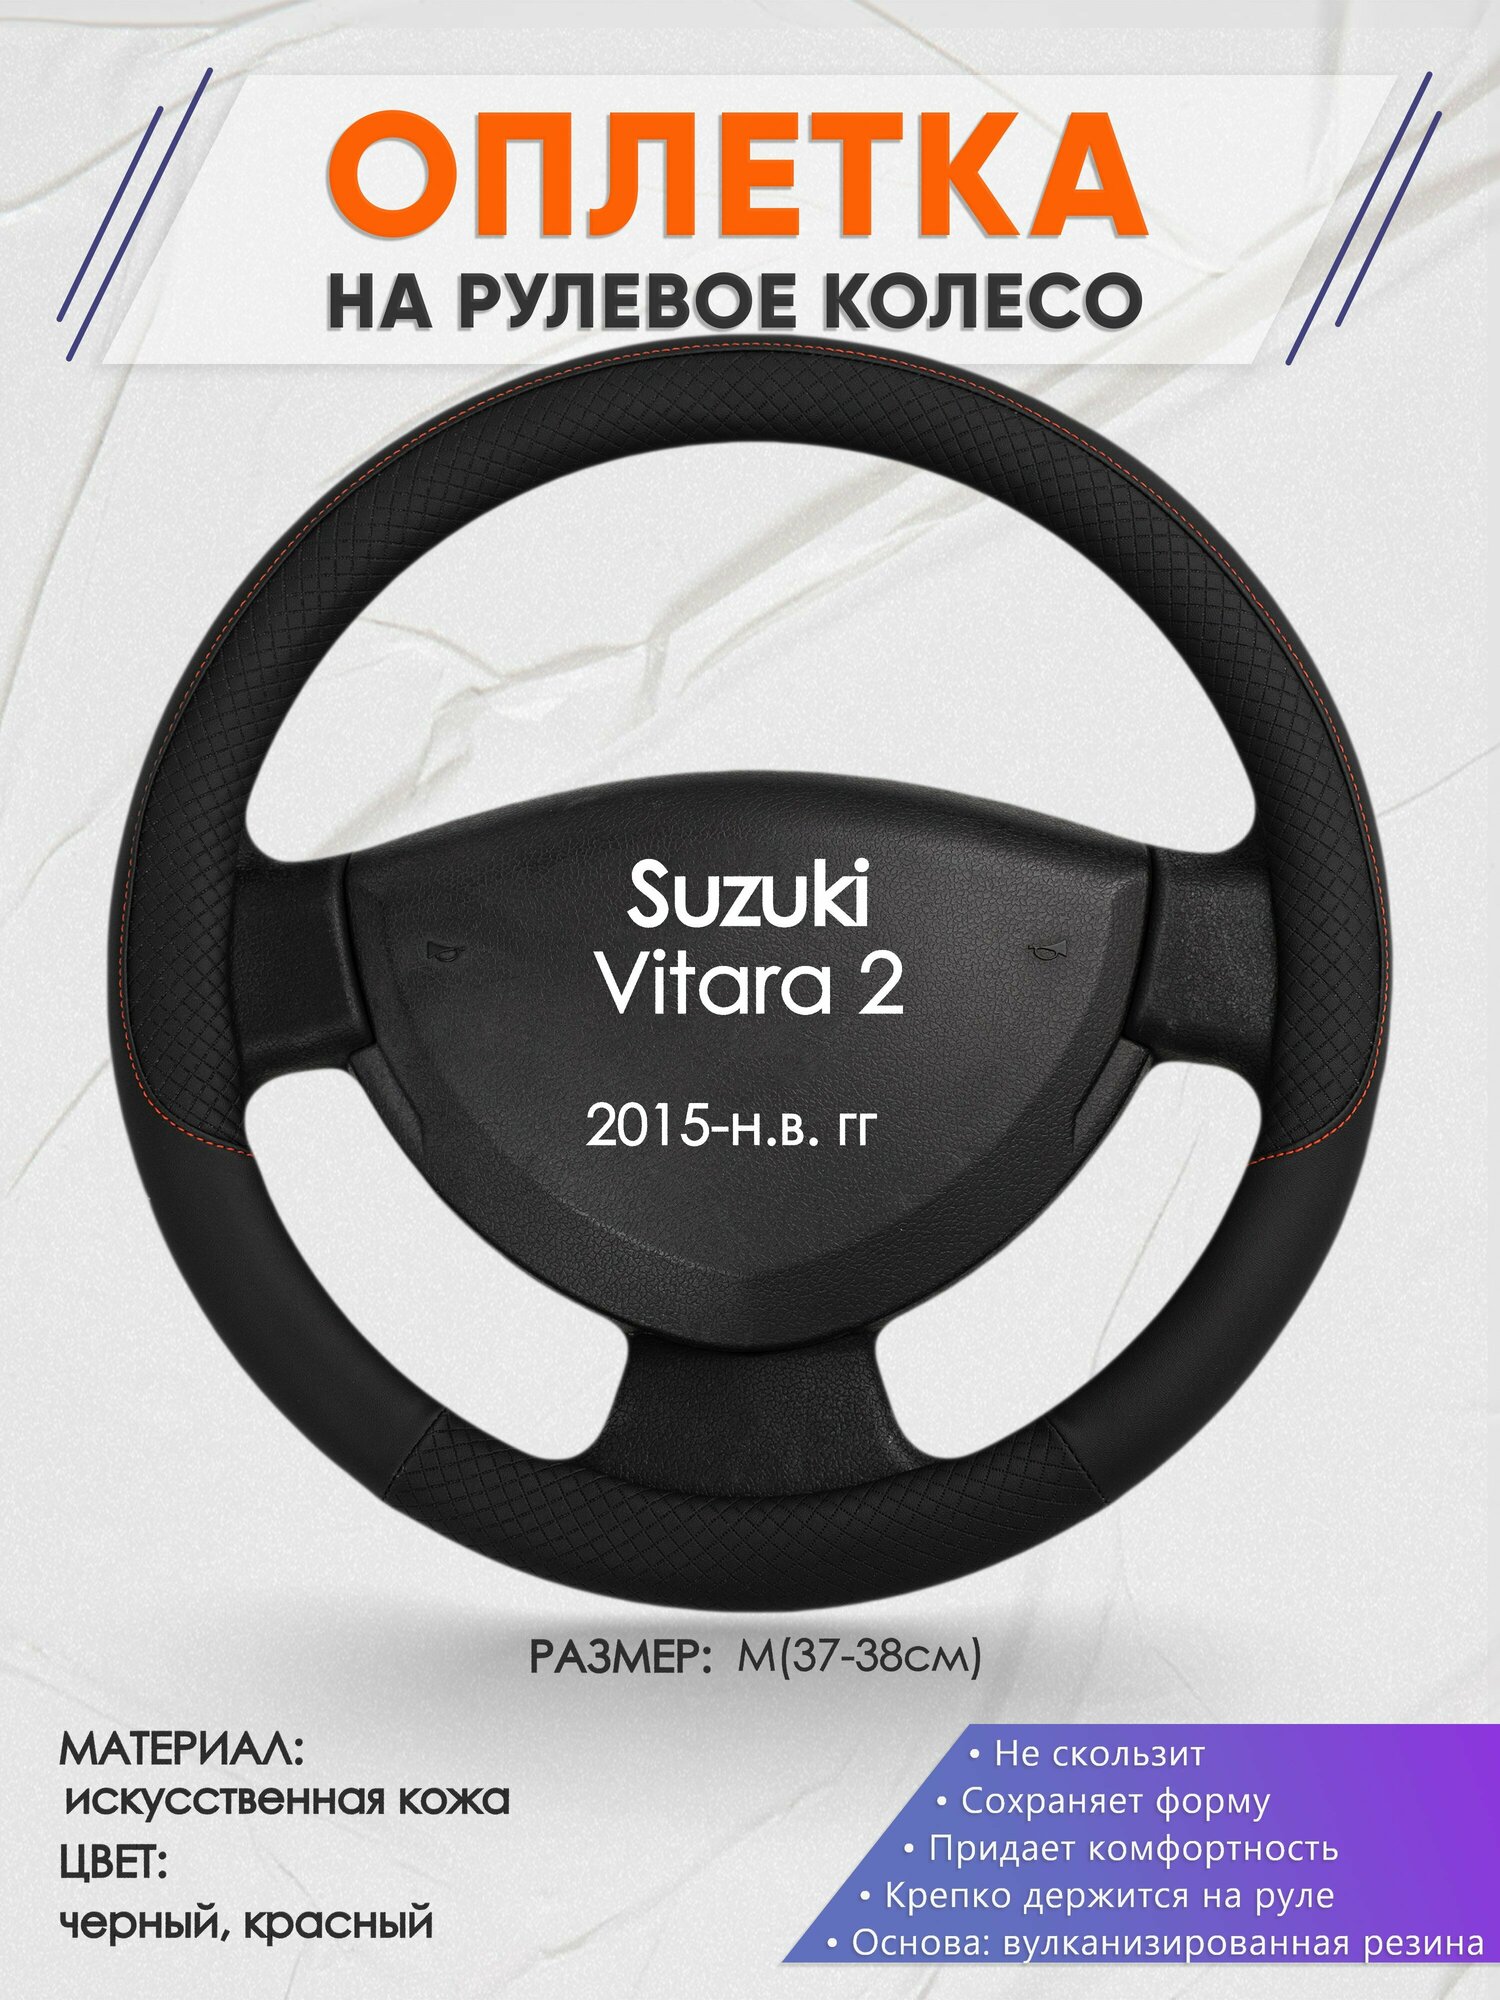 Оплетка на руль для Suzuki Vitara 2(Сузуки Витара 2) 2015-н. в M(37-38см) Искусственная кожа 82